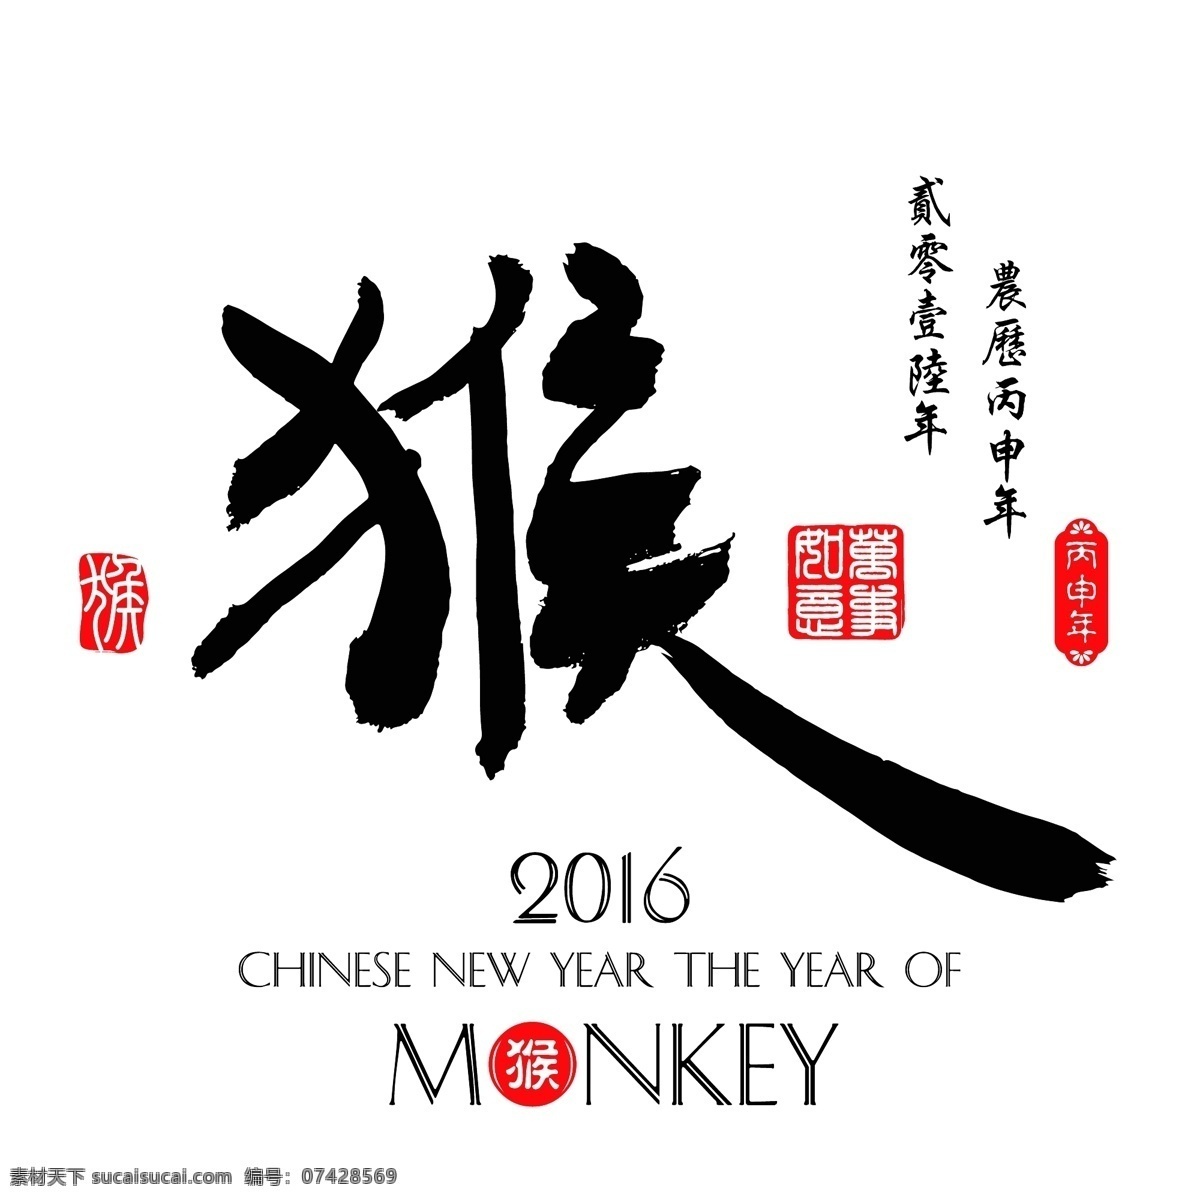 2016 猴年 简洁 大气 海报 2016猴年 简洁大气海报 猴子 年历 日历 手绘 白色